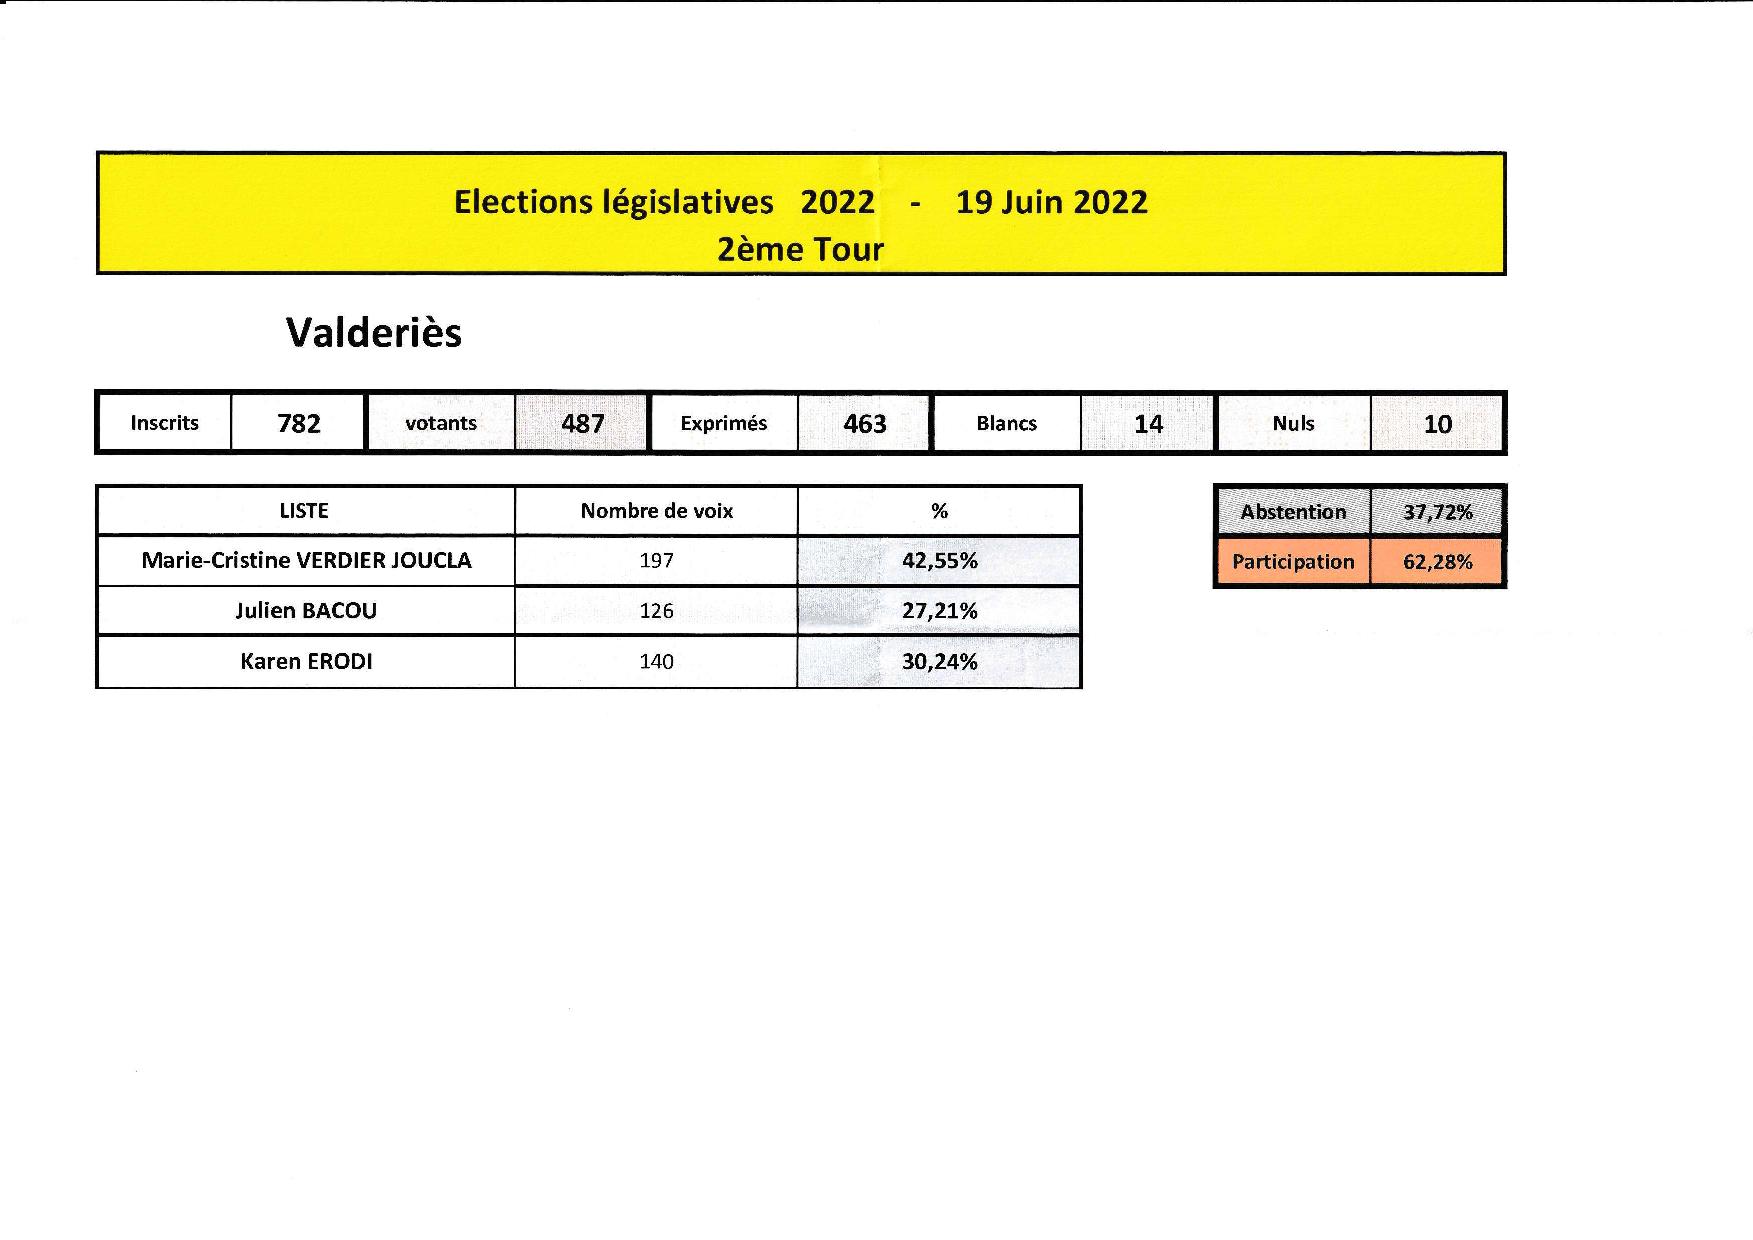 Elections législatives Valdériès 2ème tour du 19 juin 2022